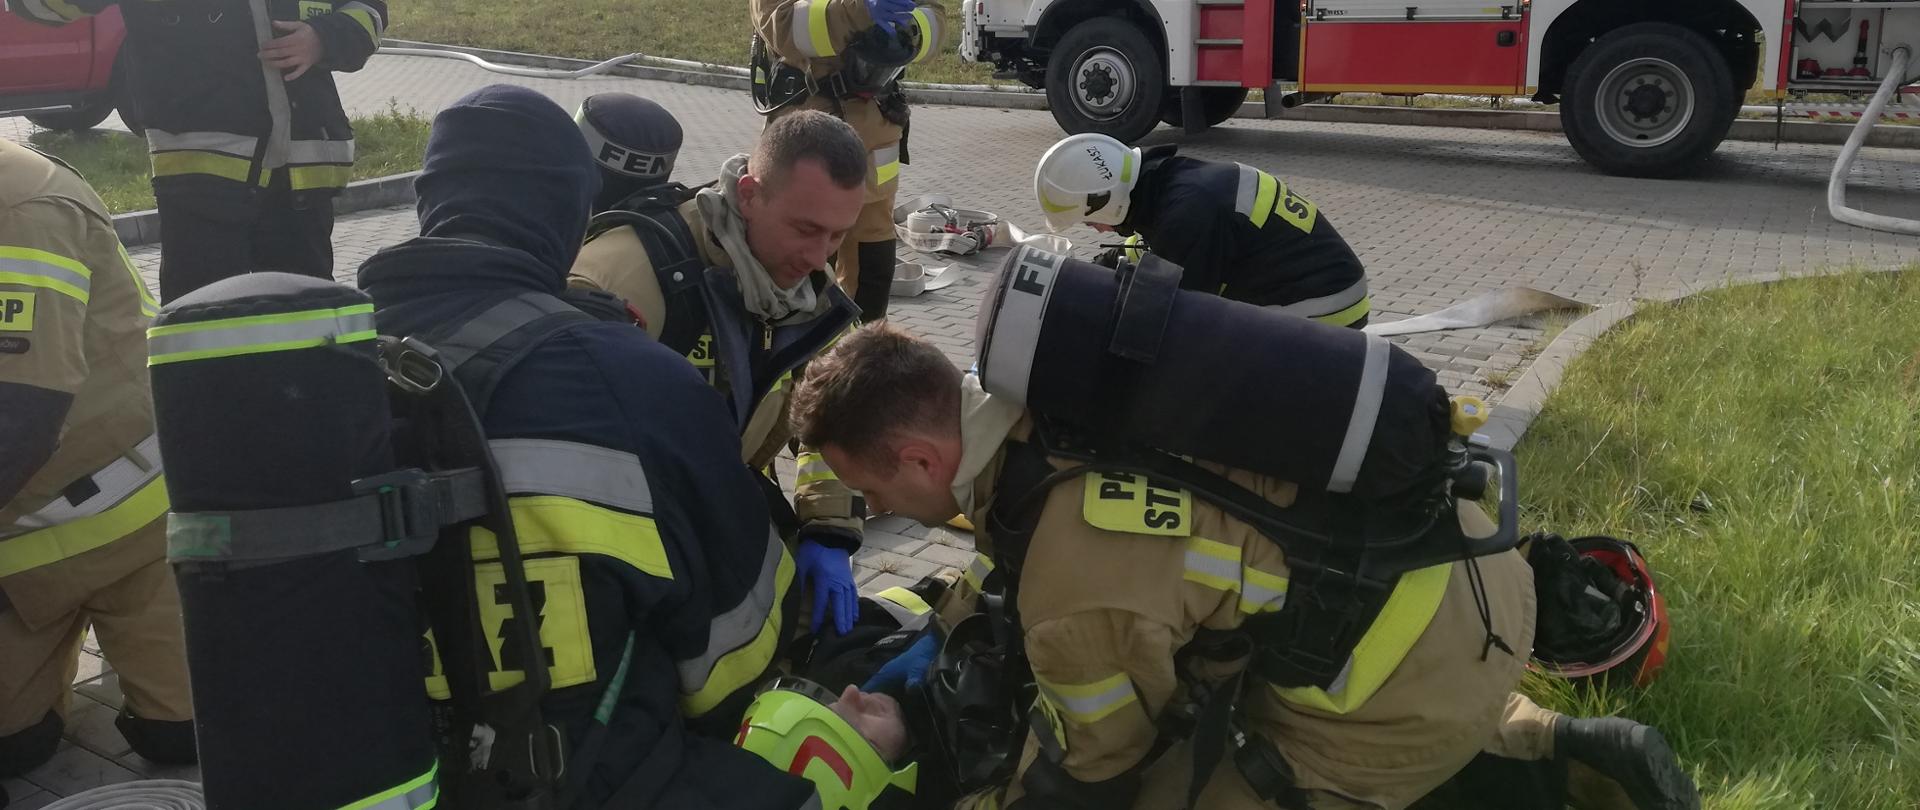 Przed zakładem Partner Systems strażacy udzielają kwalifikowanej pierwszej pomocy poszkodowanemu w trakcie działań (ćwiczeń) funkcjonariuszowi.